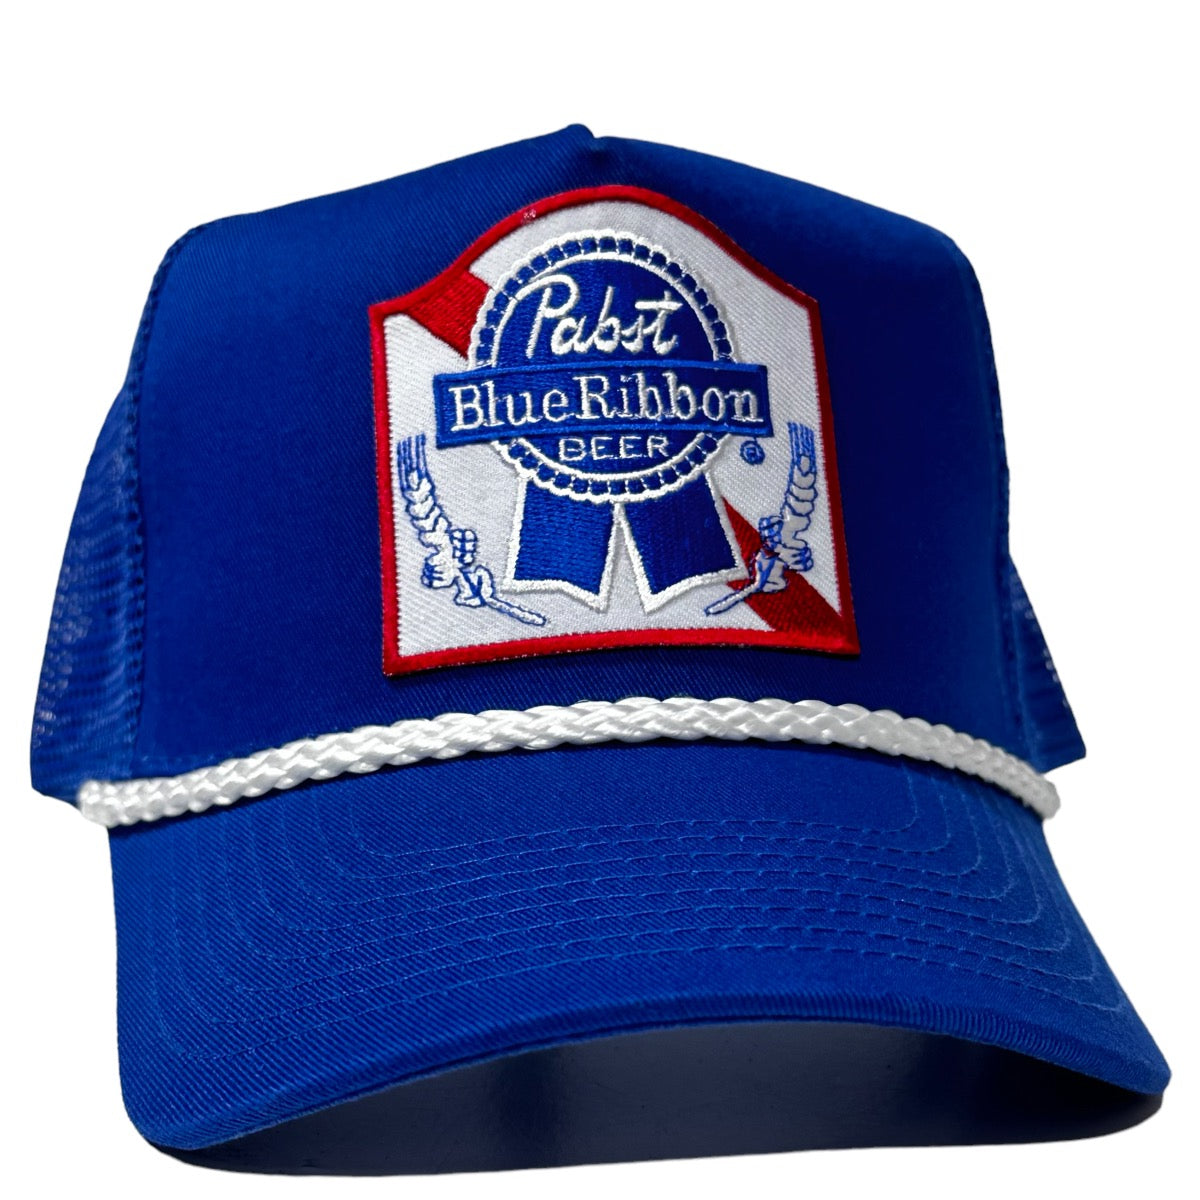 値段下！ビンテージパブストブルーリボン帽子/ 70s PBR Hat - jobbanow.com